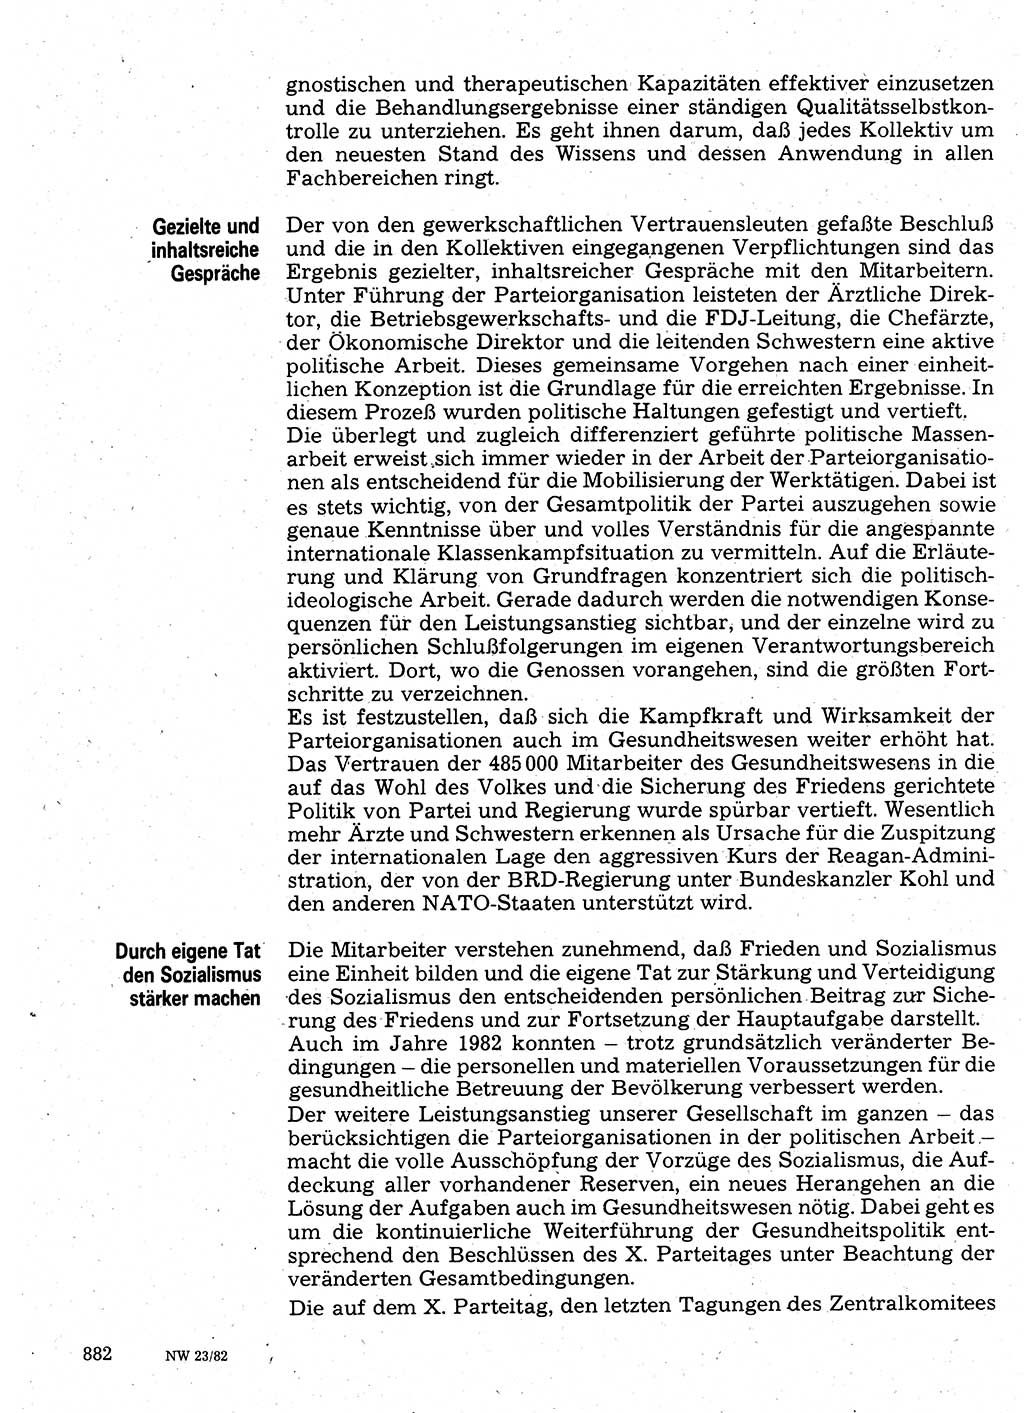 Neuer Weg (NW), Organ des Zentralkomitees (ZK) der SED (Sozialistische Einheitspartei Deutschlands) für Fragen des Parteilebens, 37. Jahrgang [Deutsche Demokratische Republik (DDR)] 1982, Seite 882 (NW ZK SED DDR 1982, S. 882)